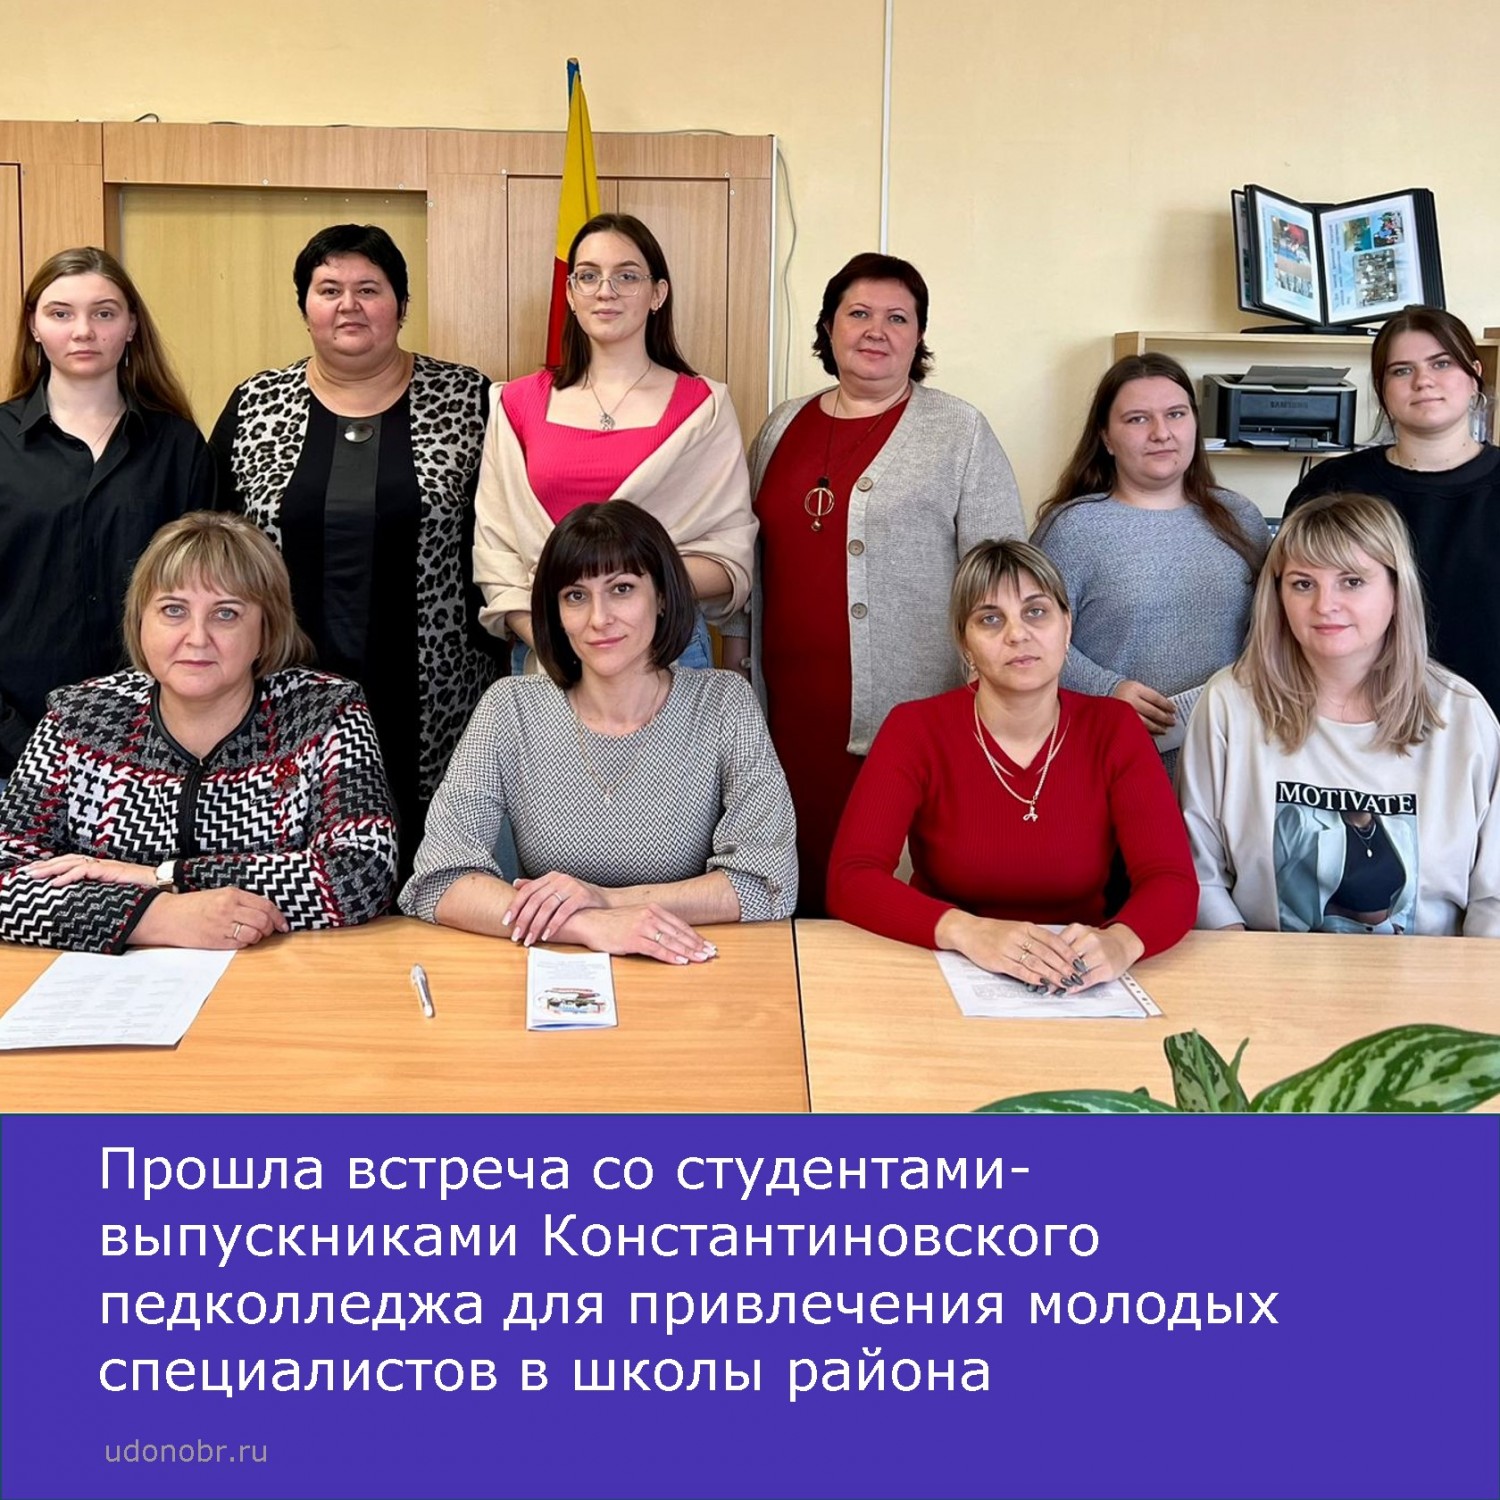 Прошла встреча со студентами-выпускниками Константиновского педколледжа для привлечения молодых специалистов в школы района